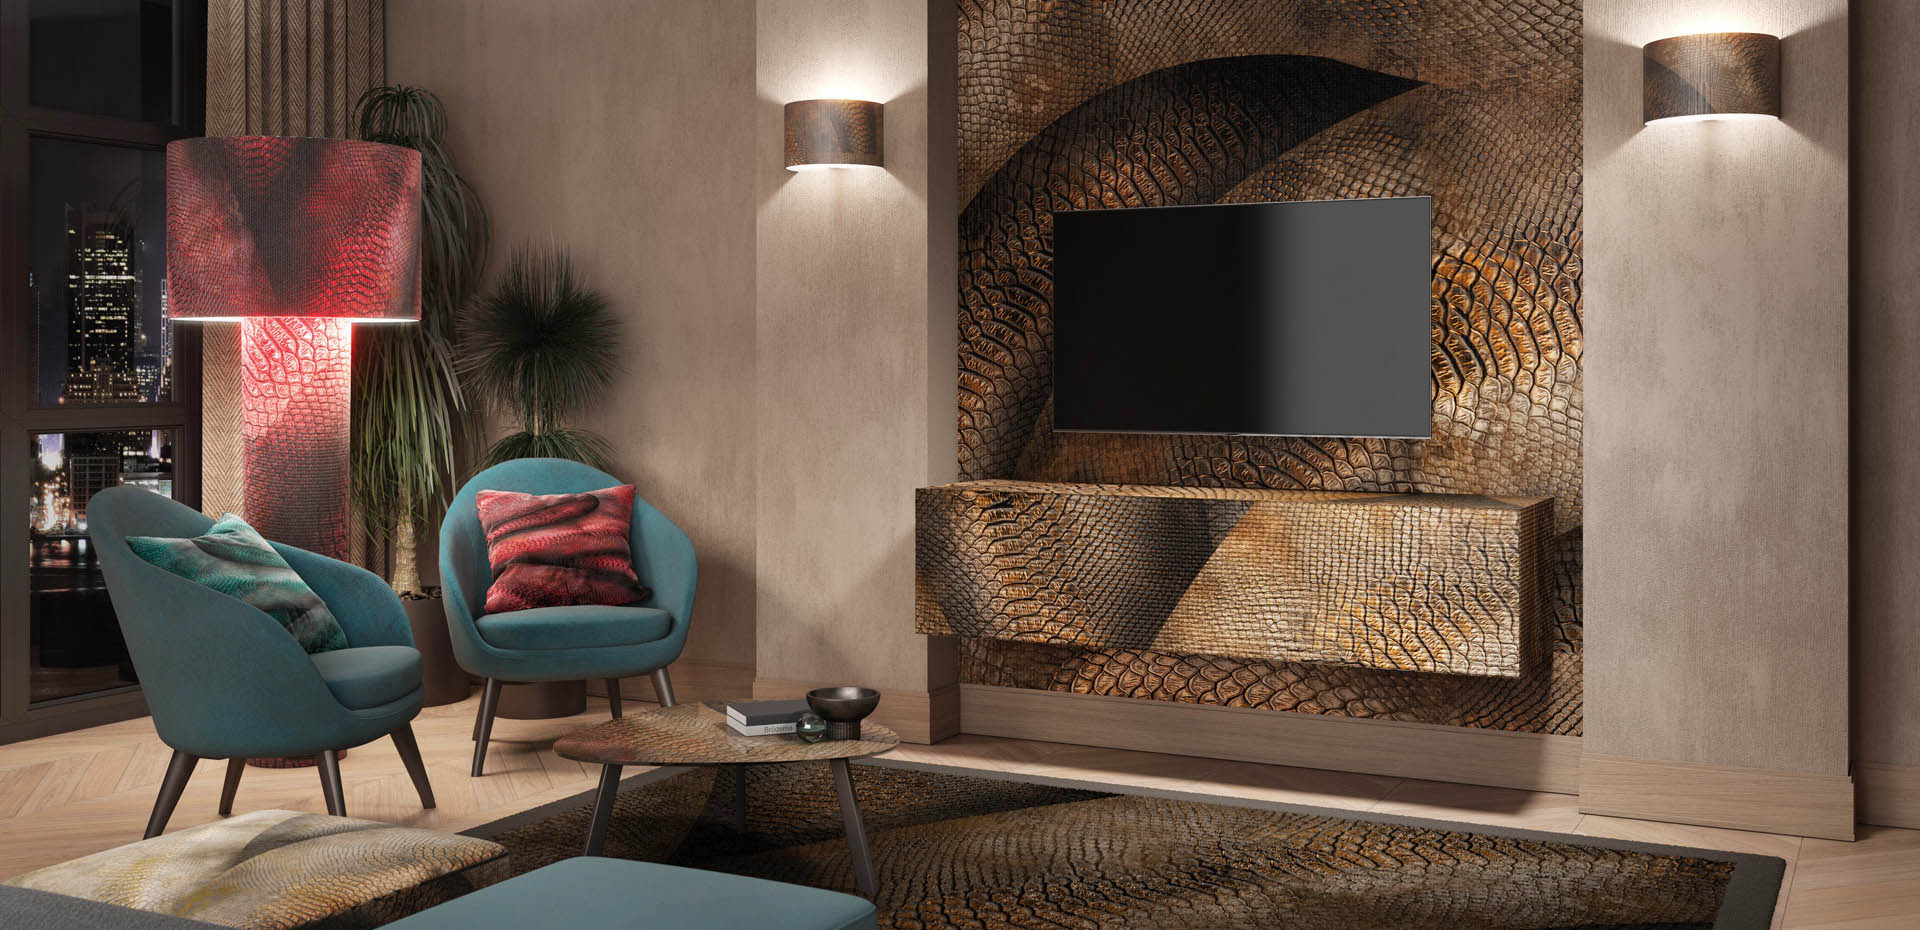 Momenti Home - Italian Custom Design - Personalized Furniture